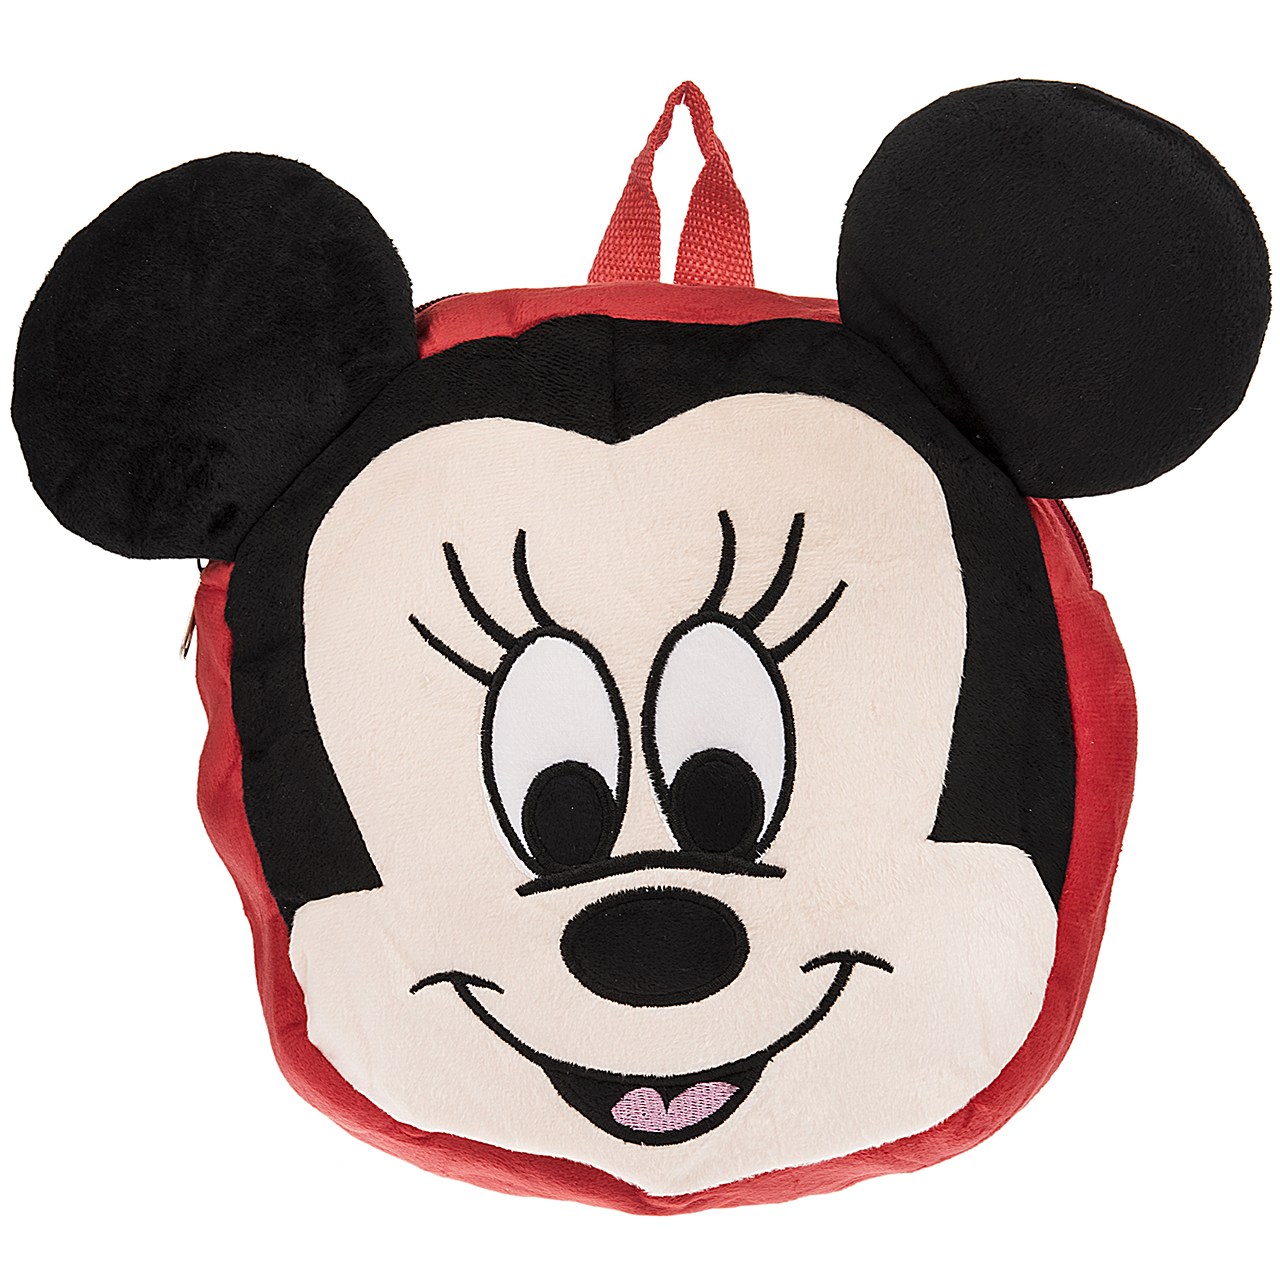 کوله پشتی کودک رز کیف مدل Mickey Mouse